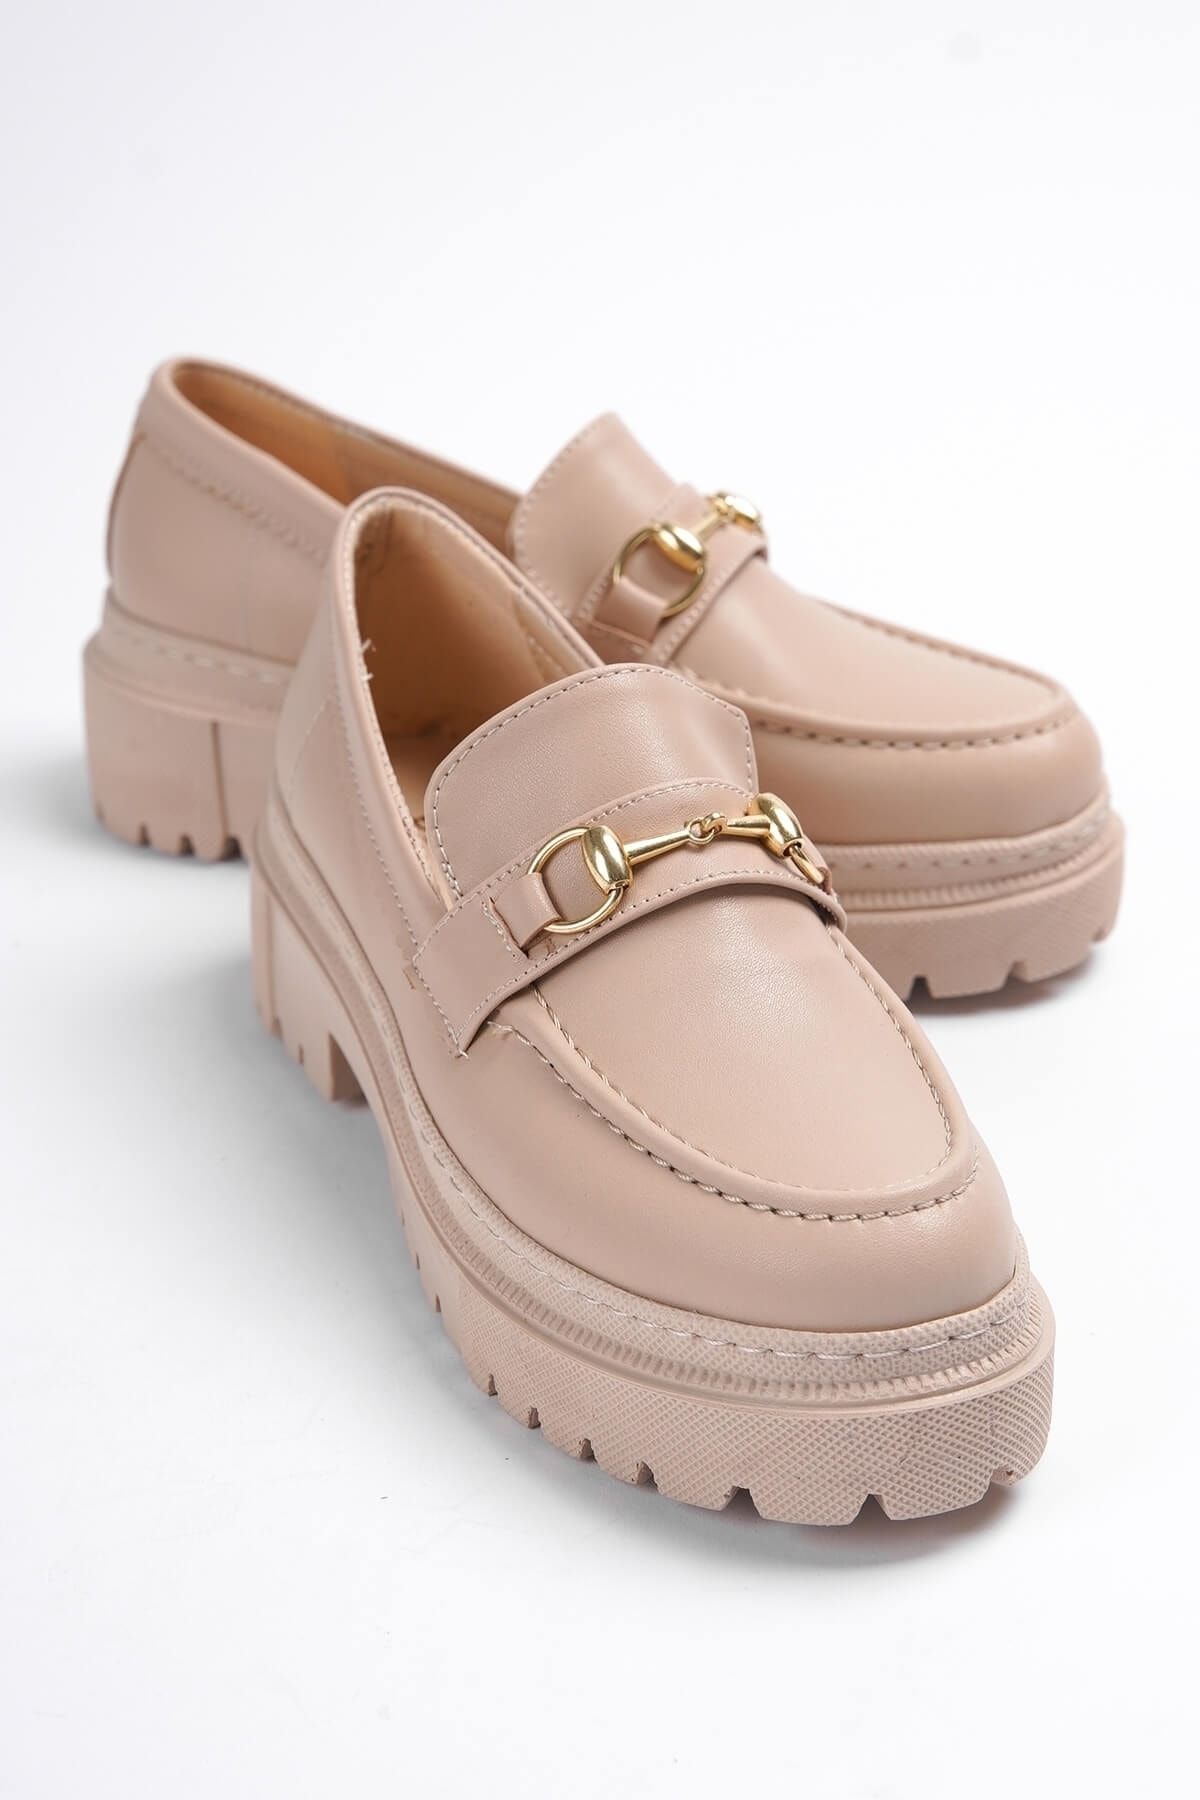 DİVOLYA Ferrera Nude Gold Tokalı Deri Günlük Kullanım Loafer Kadın Ayakkabı